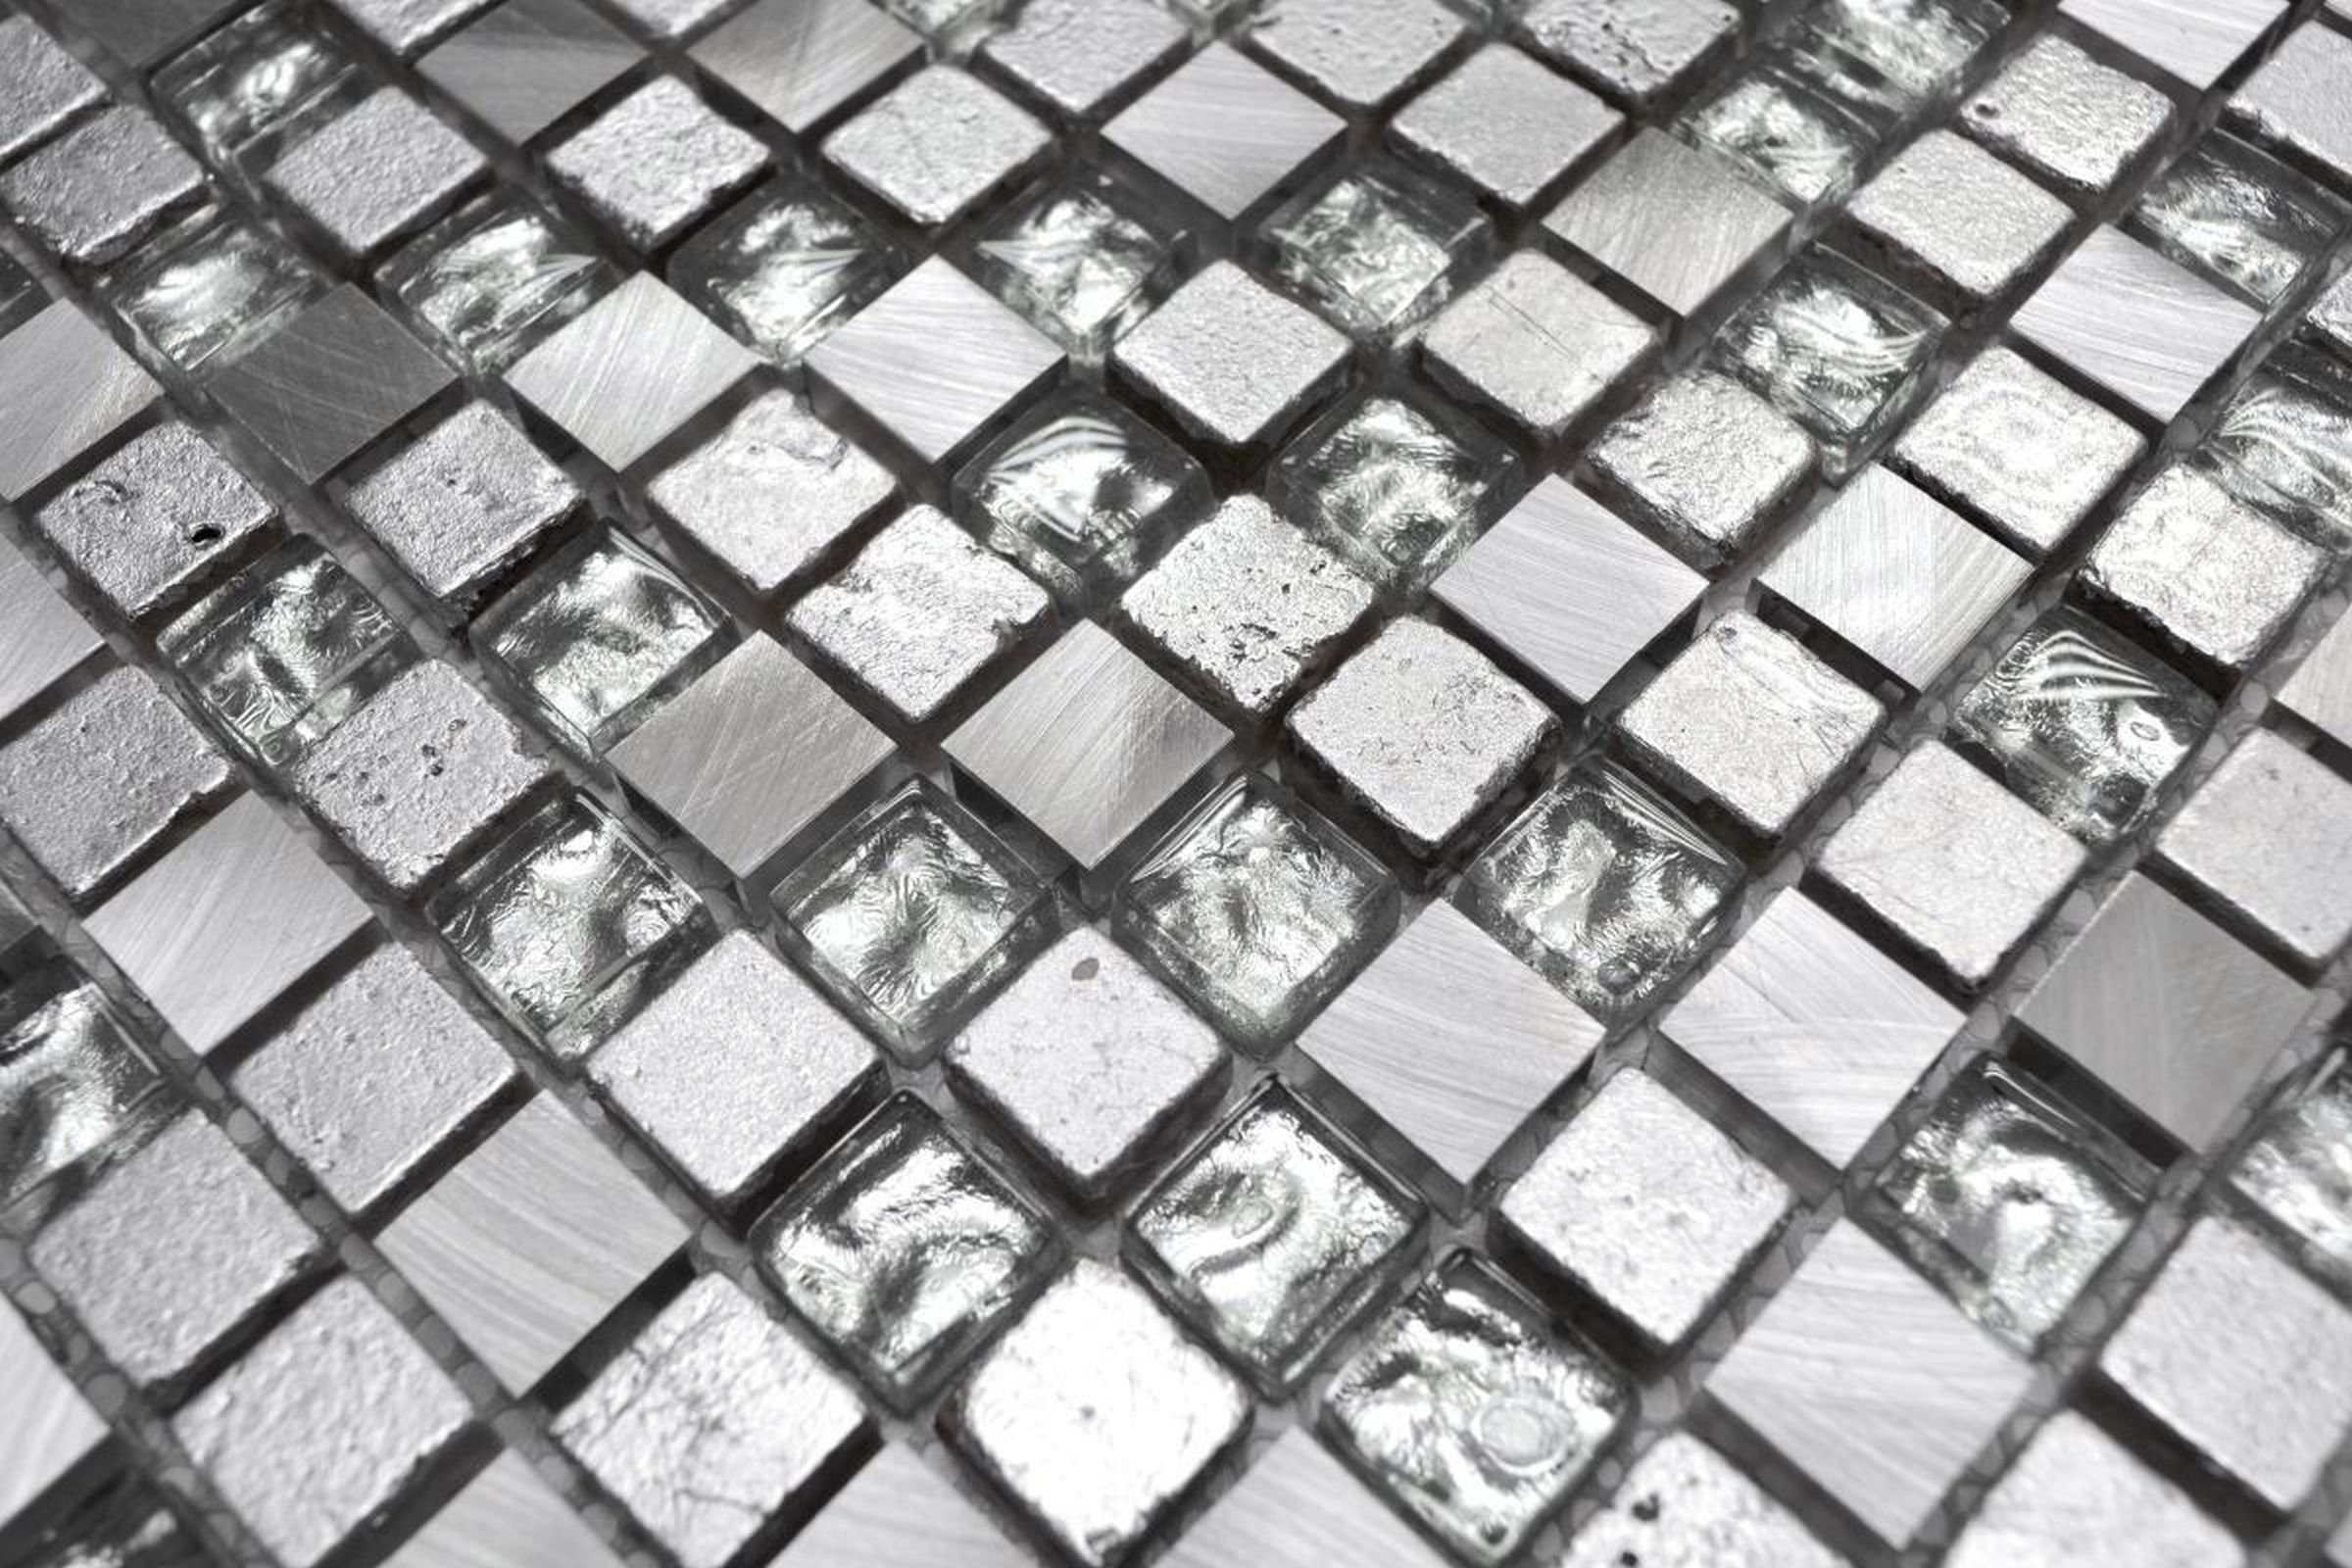 Mosani Mosaikfliesen Glasmosaik Mosaikfliese Resin grau silber Aluminium